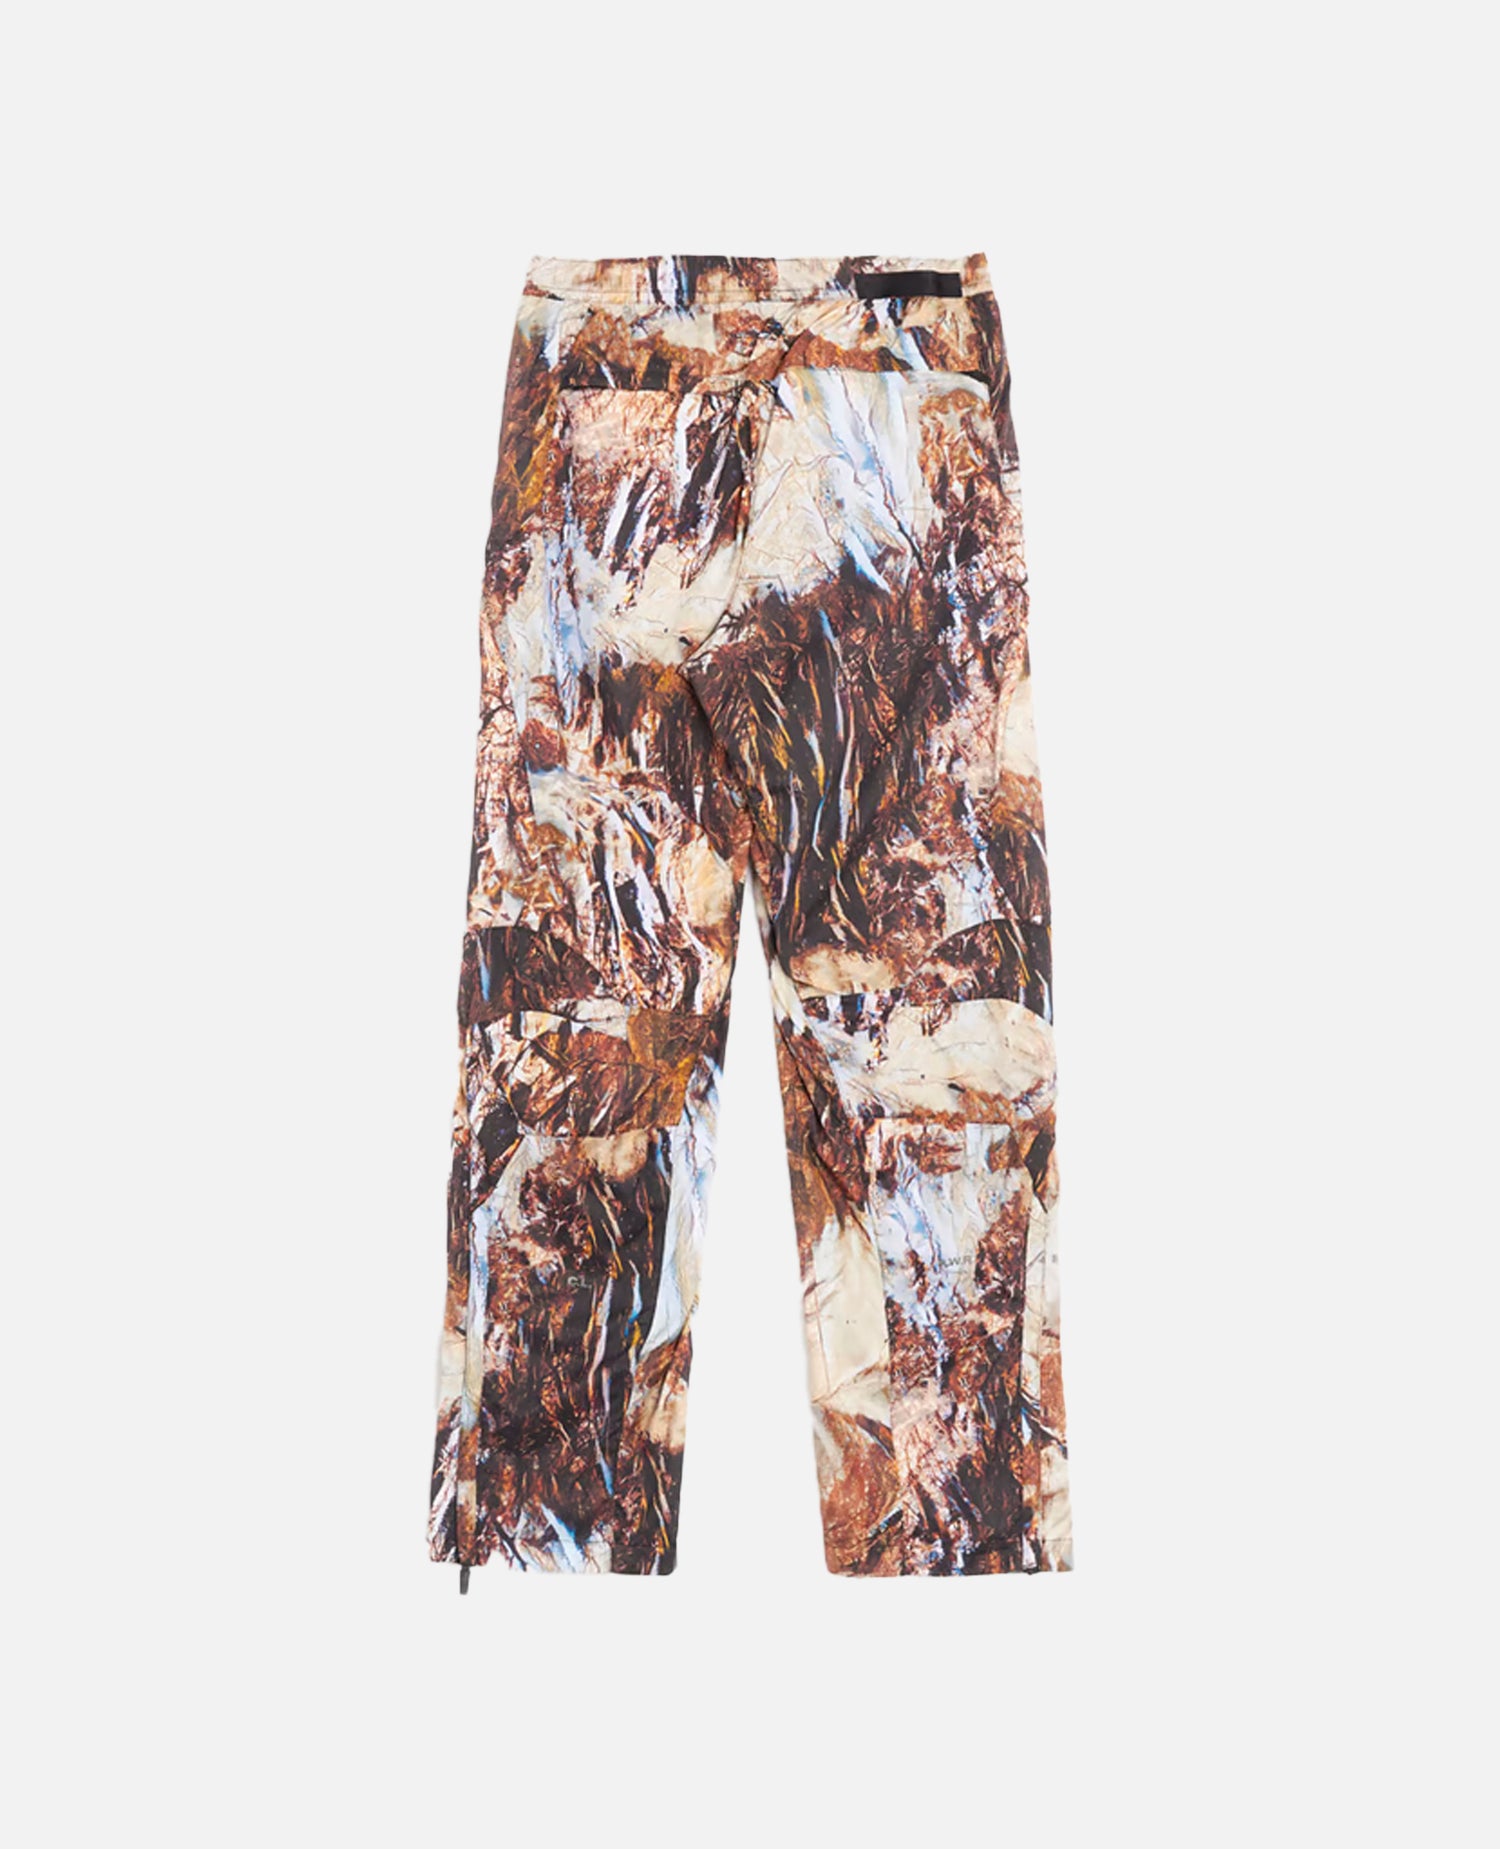 Pantalon de survêtement Nike NRG NOCTA camouflage (multicolore)